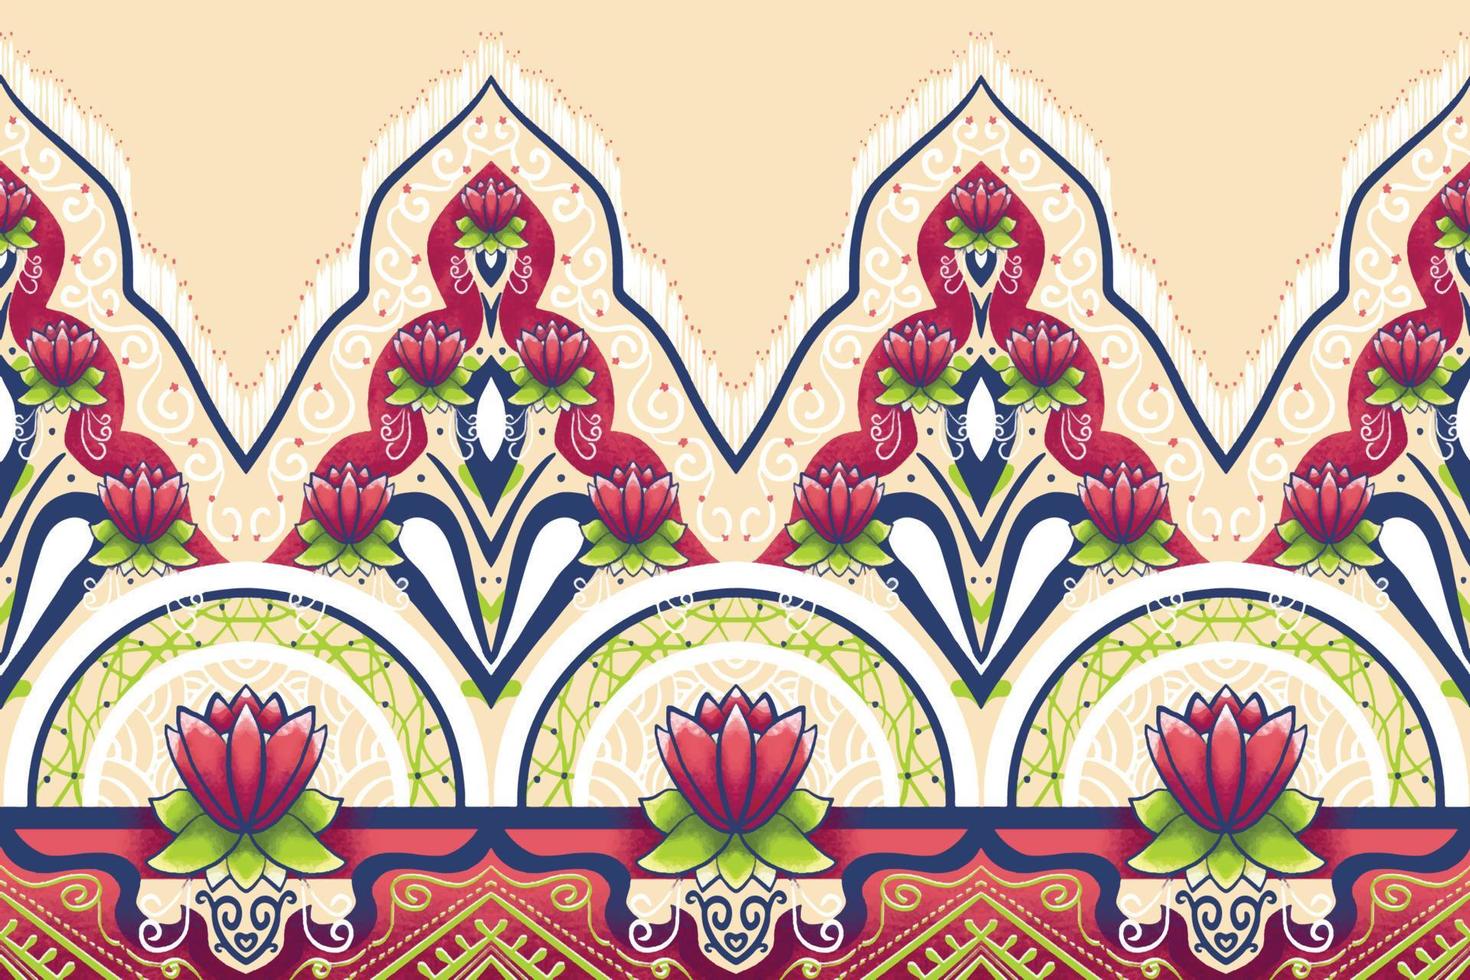 flor rosa em bege marfim, verde, azul marinho padrão oriental geométrico étnico design tradicional para plano de fundo, tapete, papel de parede, roupas, embrulho, batik, tecido, estilo de bordado de ilustração vetorial vetor